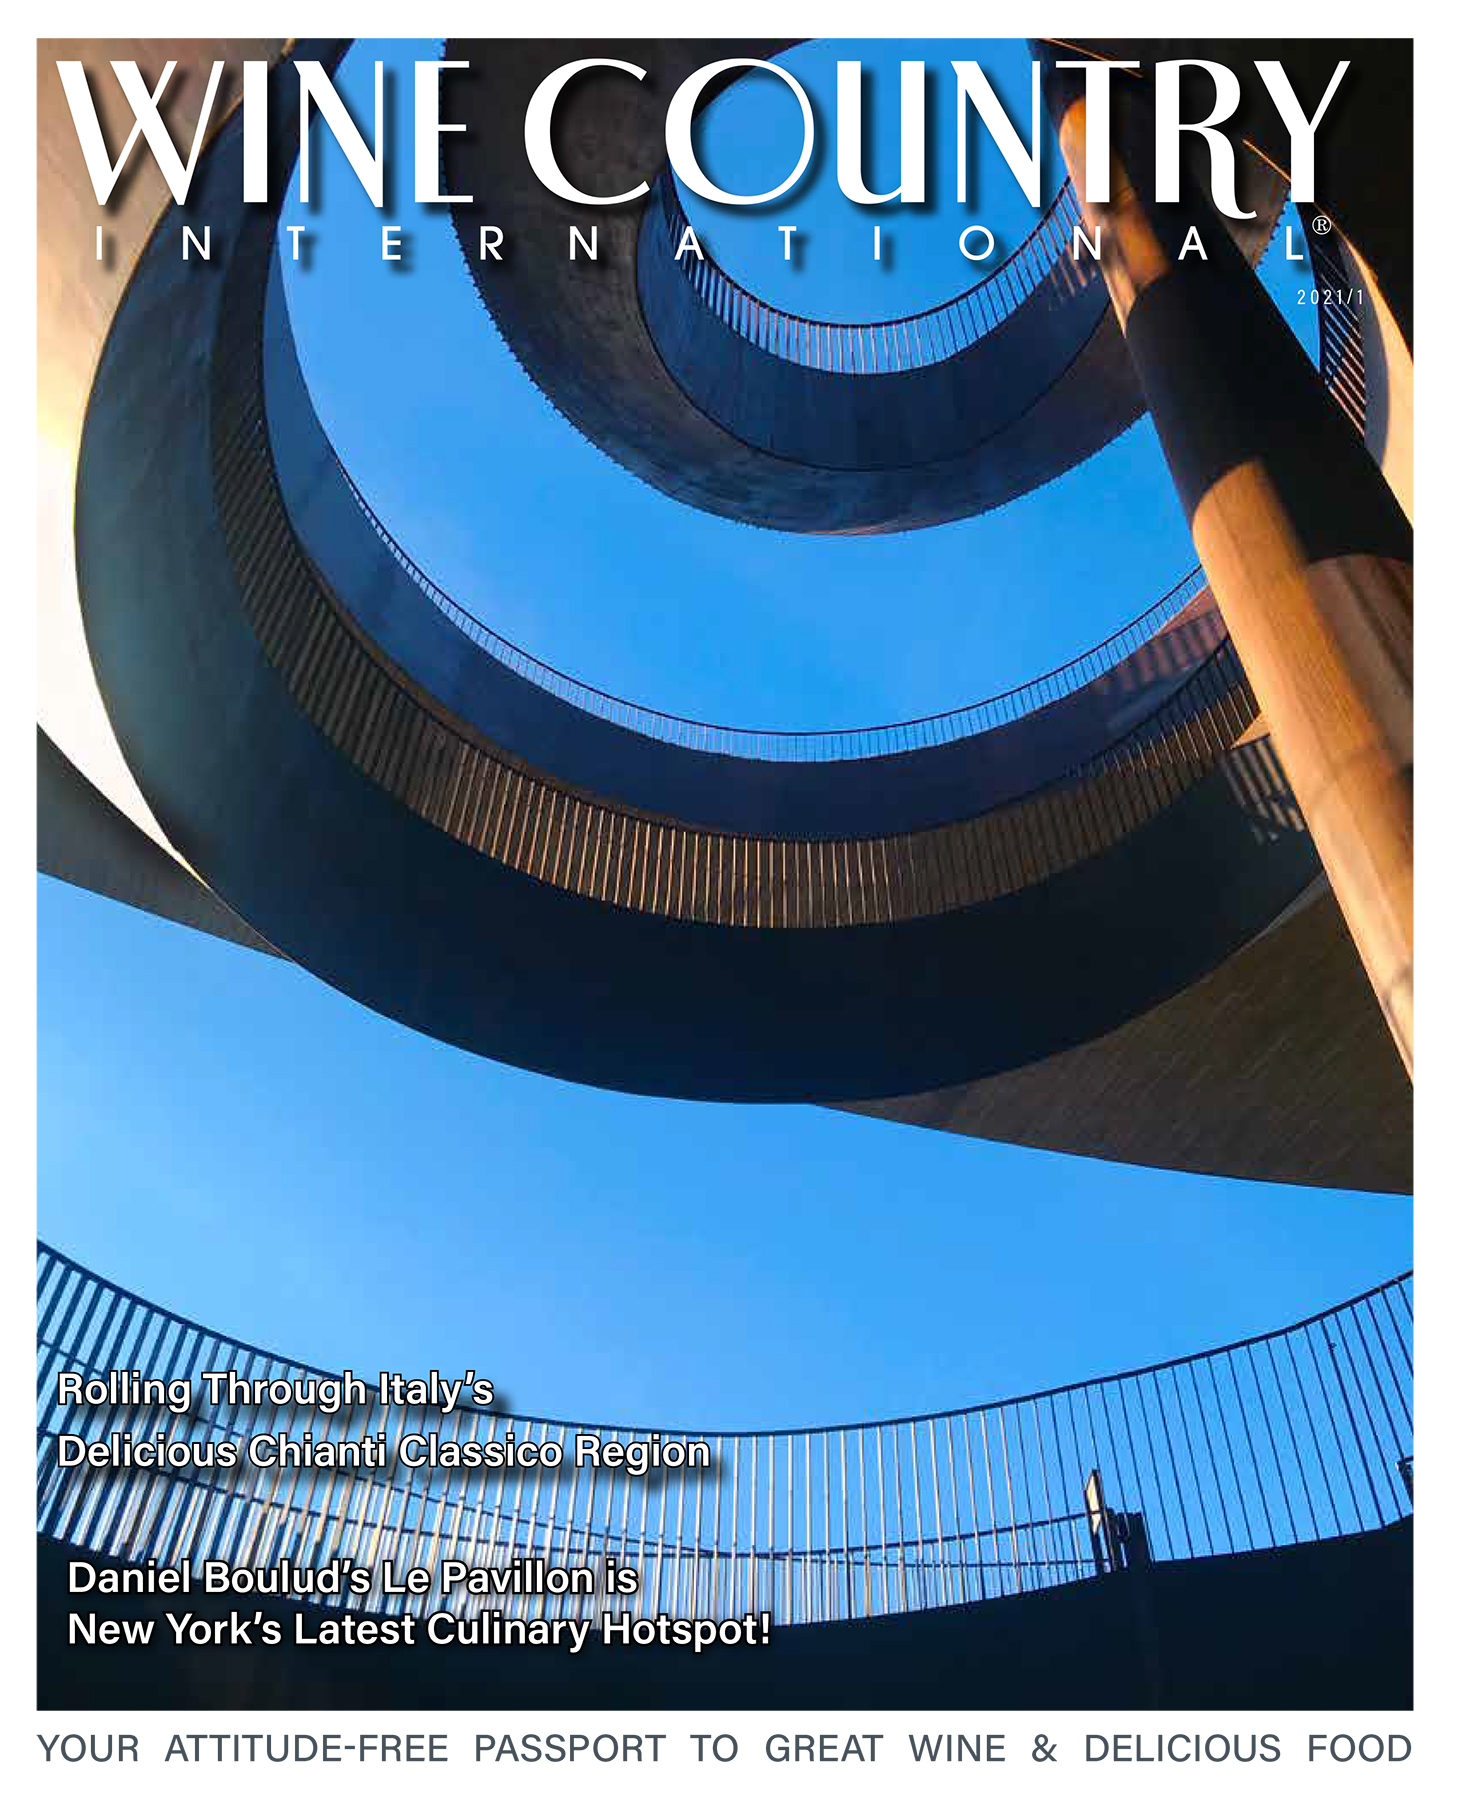 Winecountry_network_2021_V1_Cover